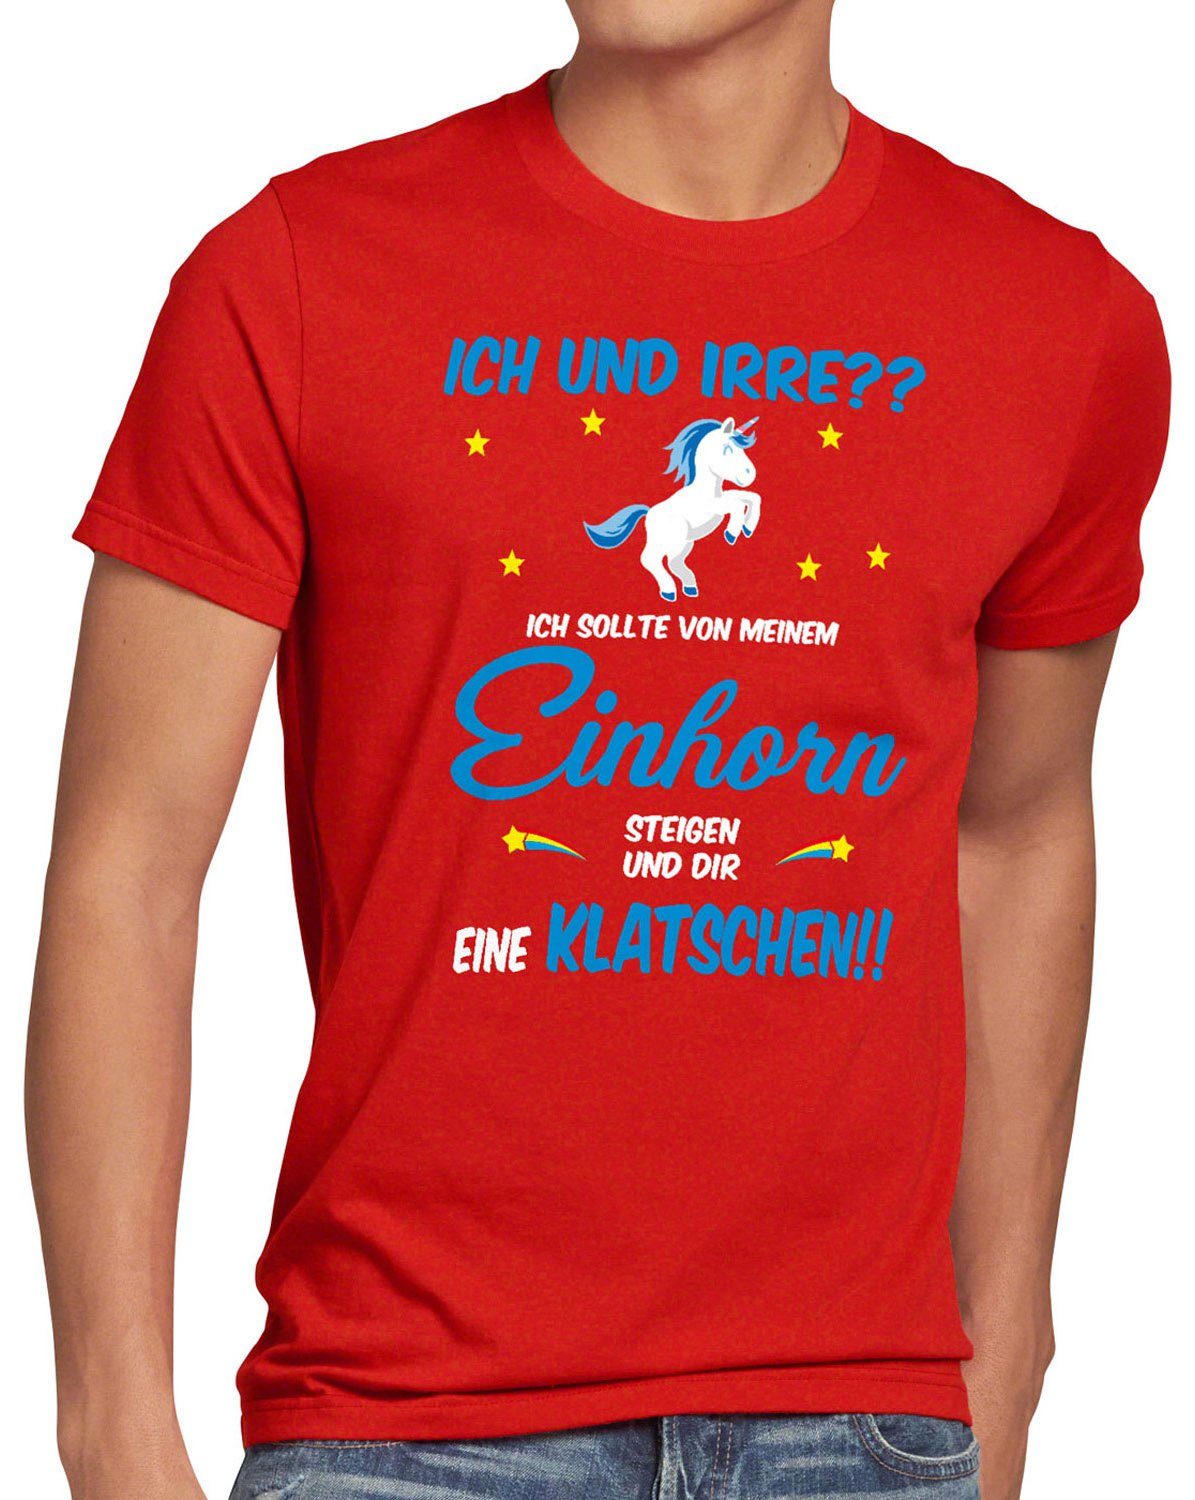 Einhorn Print-Shirt ICH IRRE? style3 T-Shirt absteigen klatschen Spruch rot Herren Fun und Einhörner